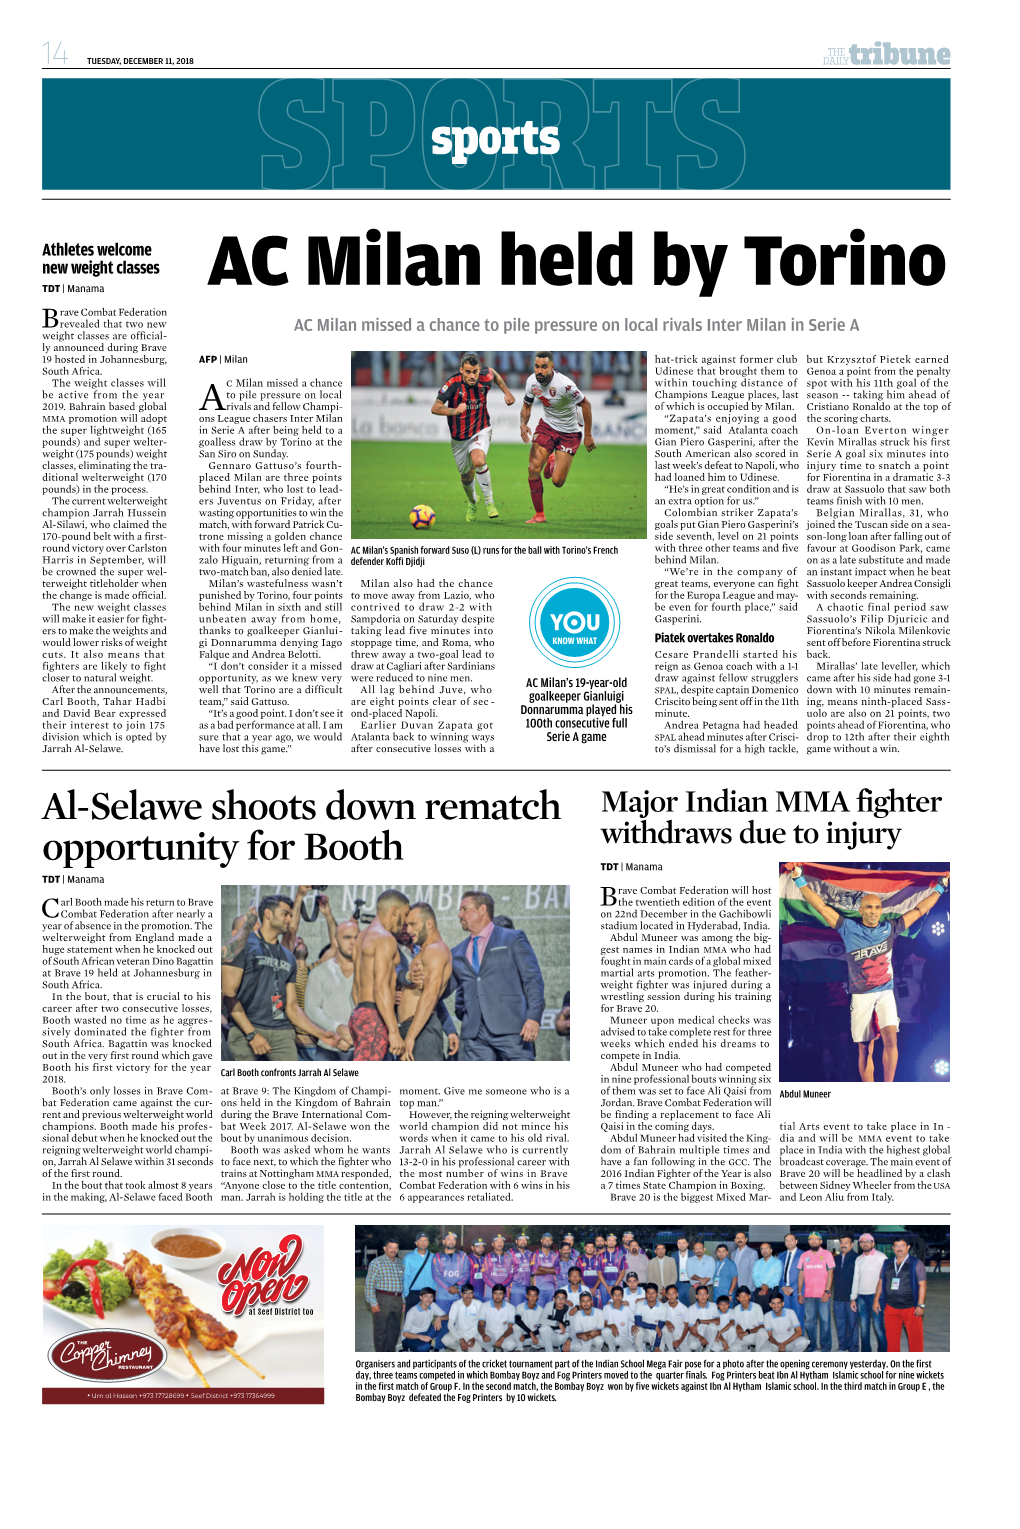 AC Milan Held by Torino